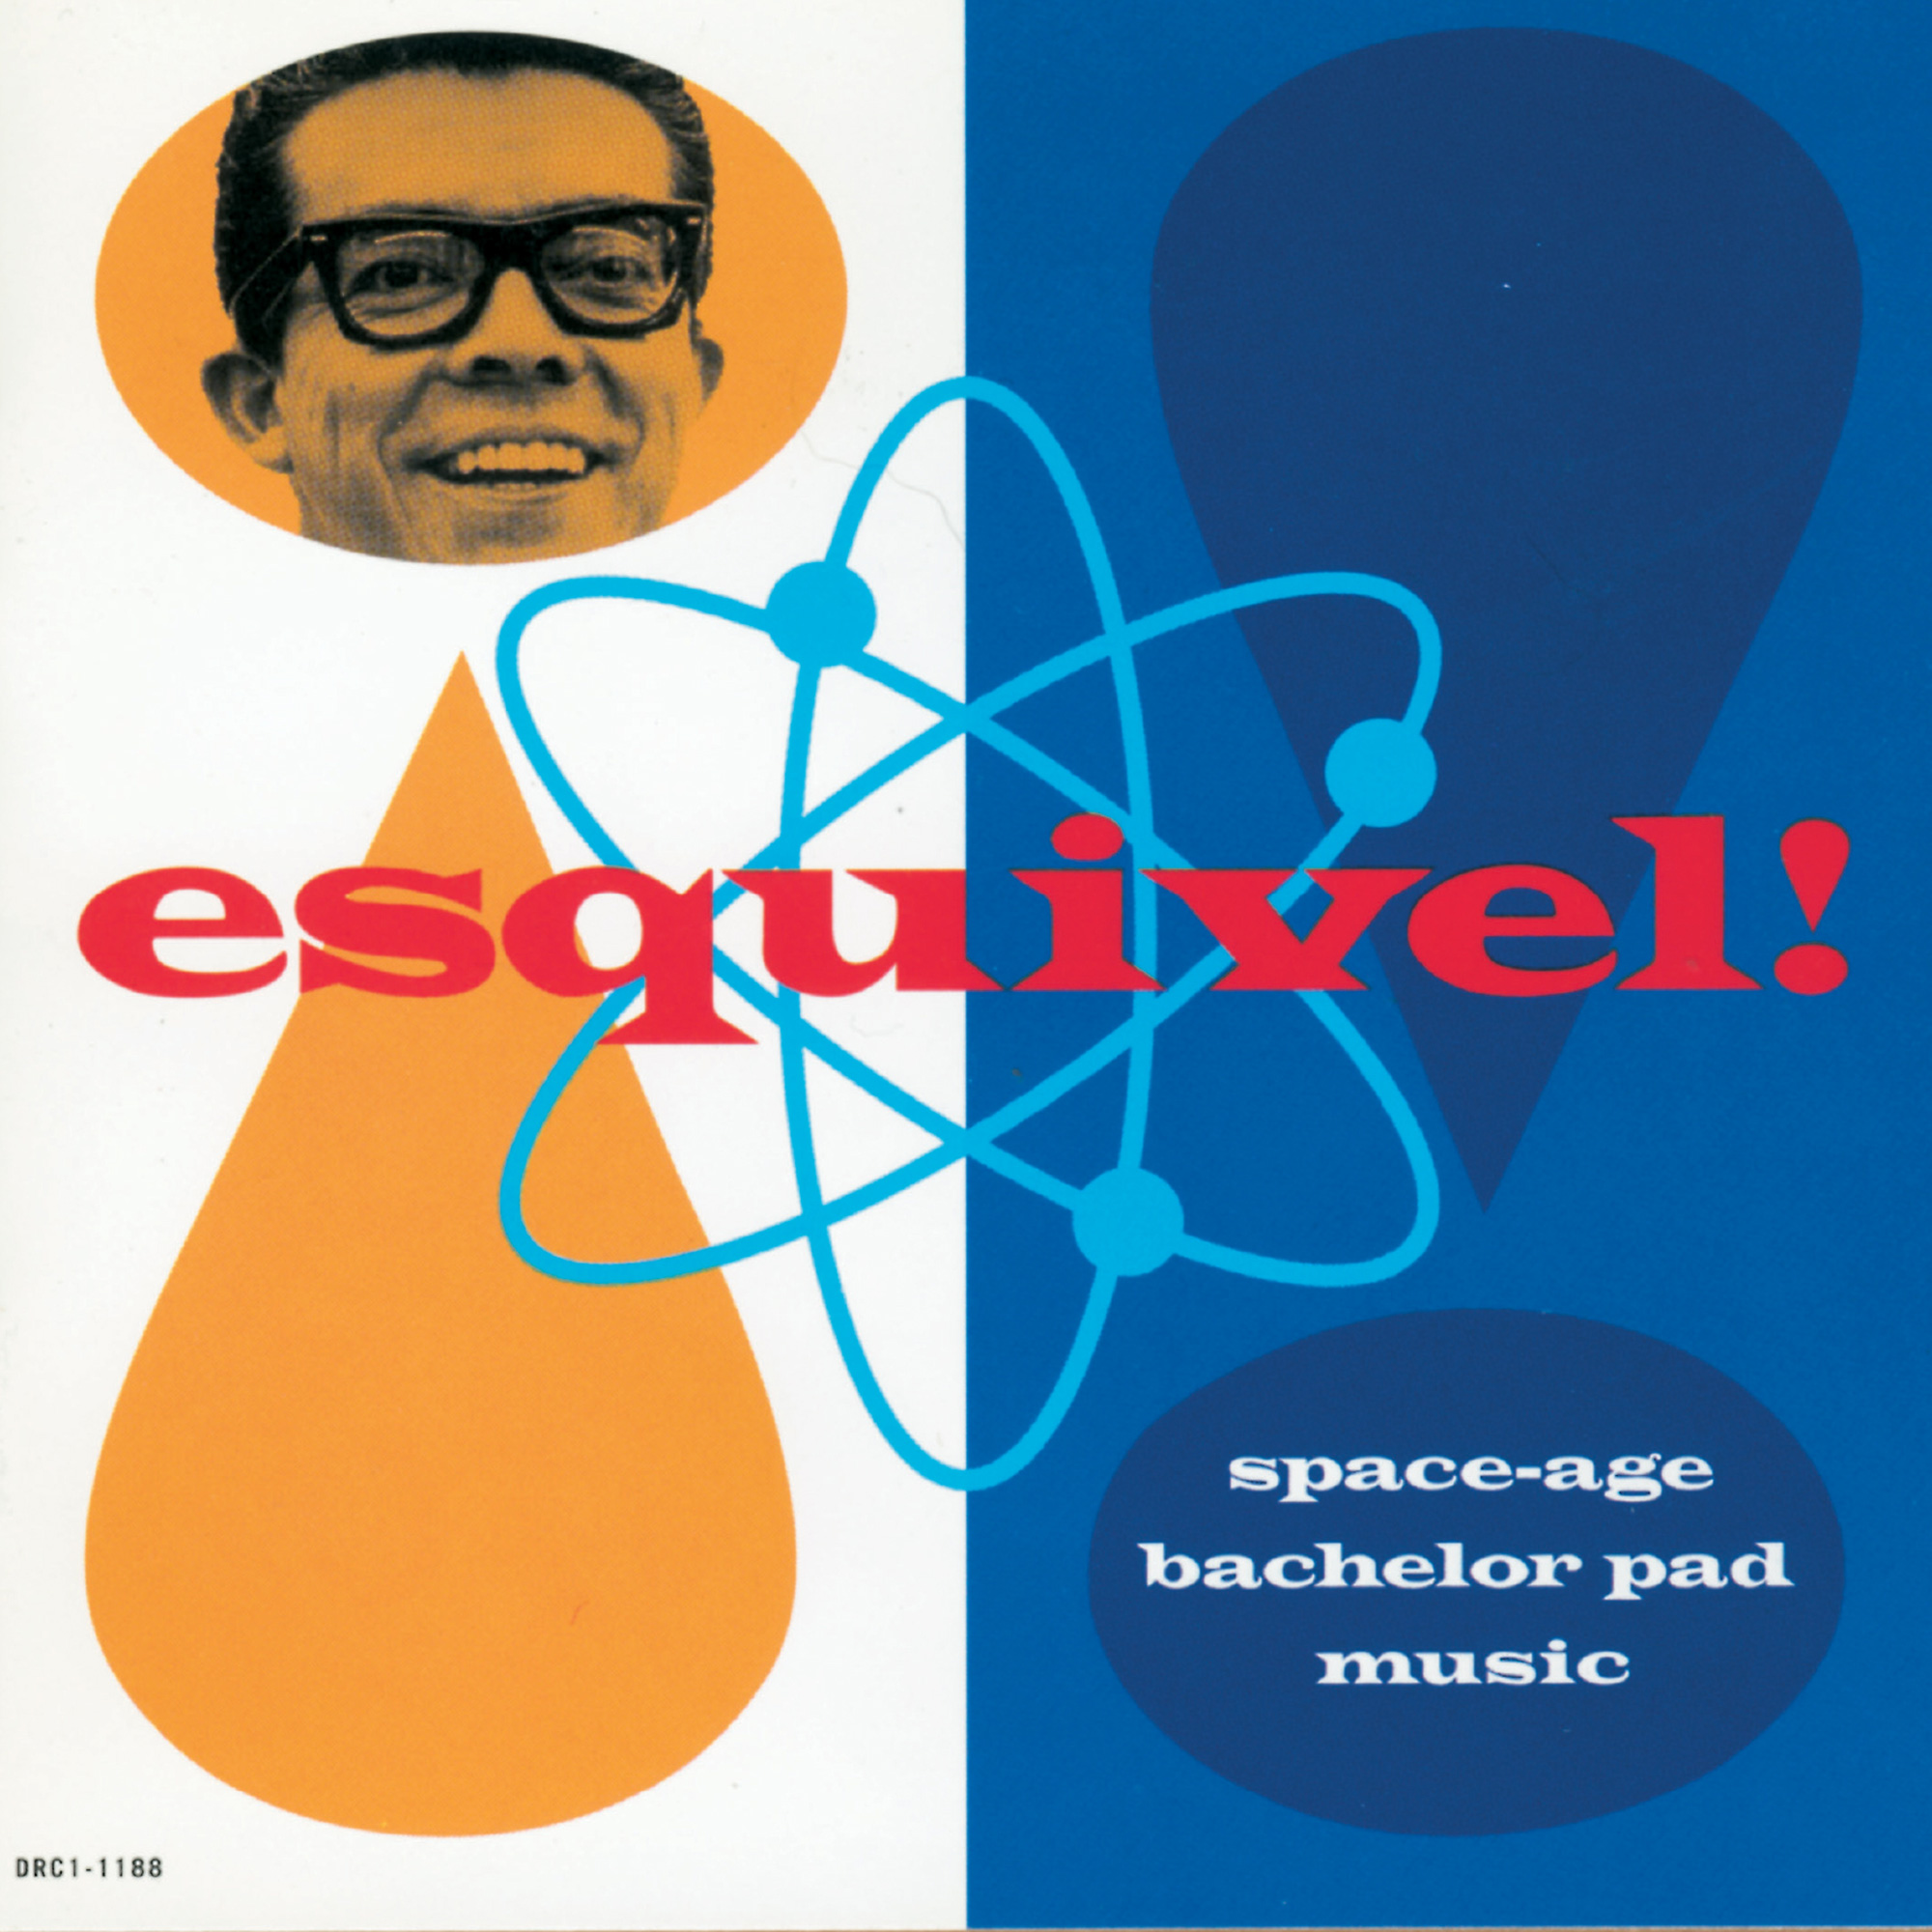 The cover of Juan Garcia Esquivel's album 